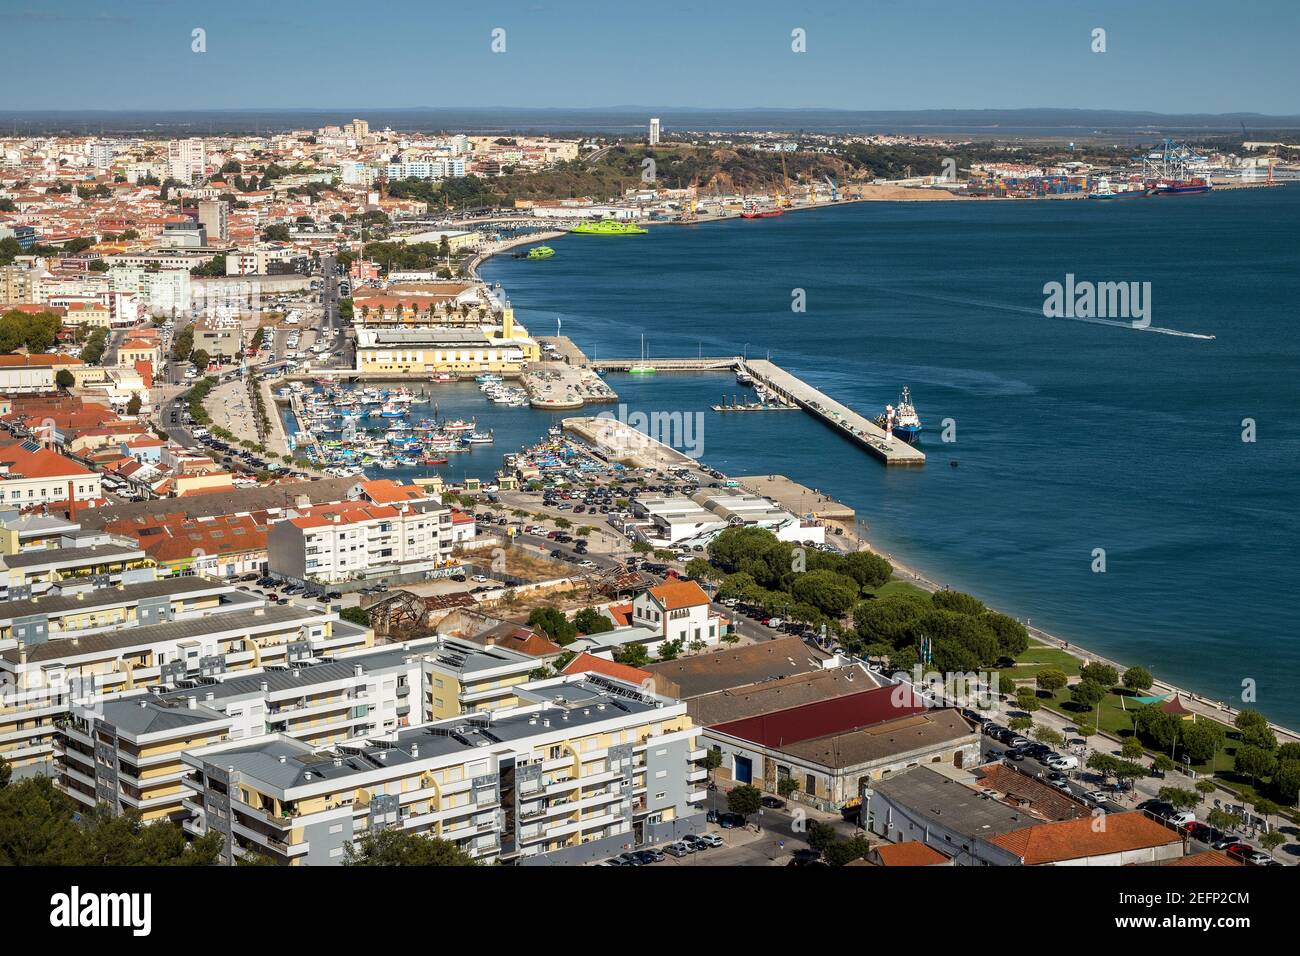 Paesaggio della zona lungo il fiume della città di Setúbal in Portogallo, con il porto di pesca come punto centrale. Foto Stock